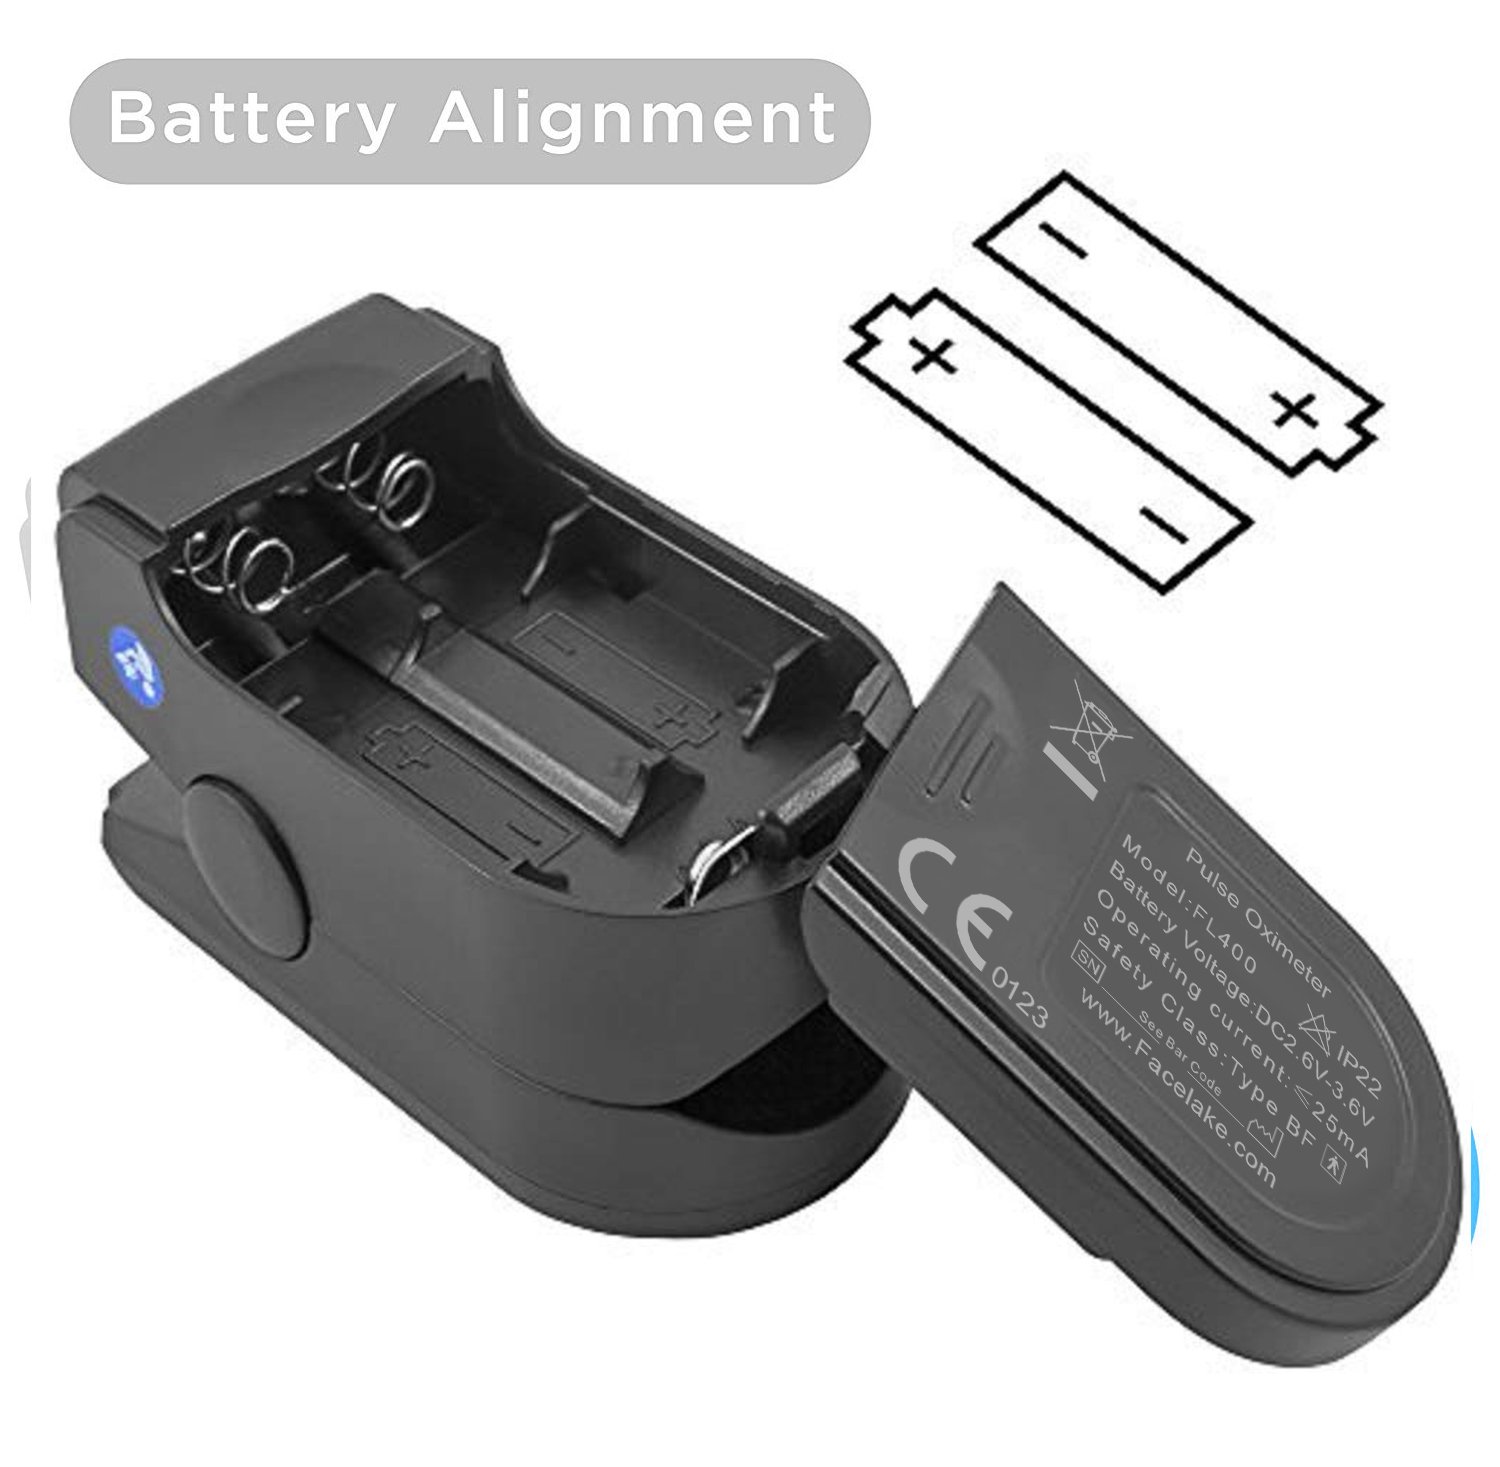 FaceLake FL-400 Fingertip Pulse Oximeter (Black) - image 5 of 5